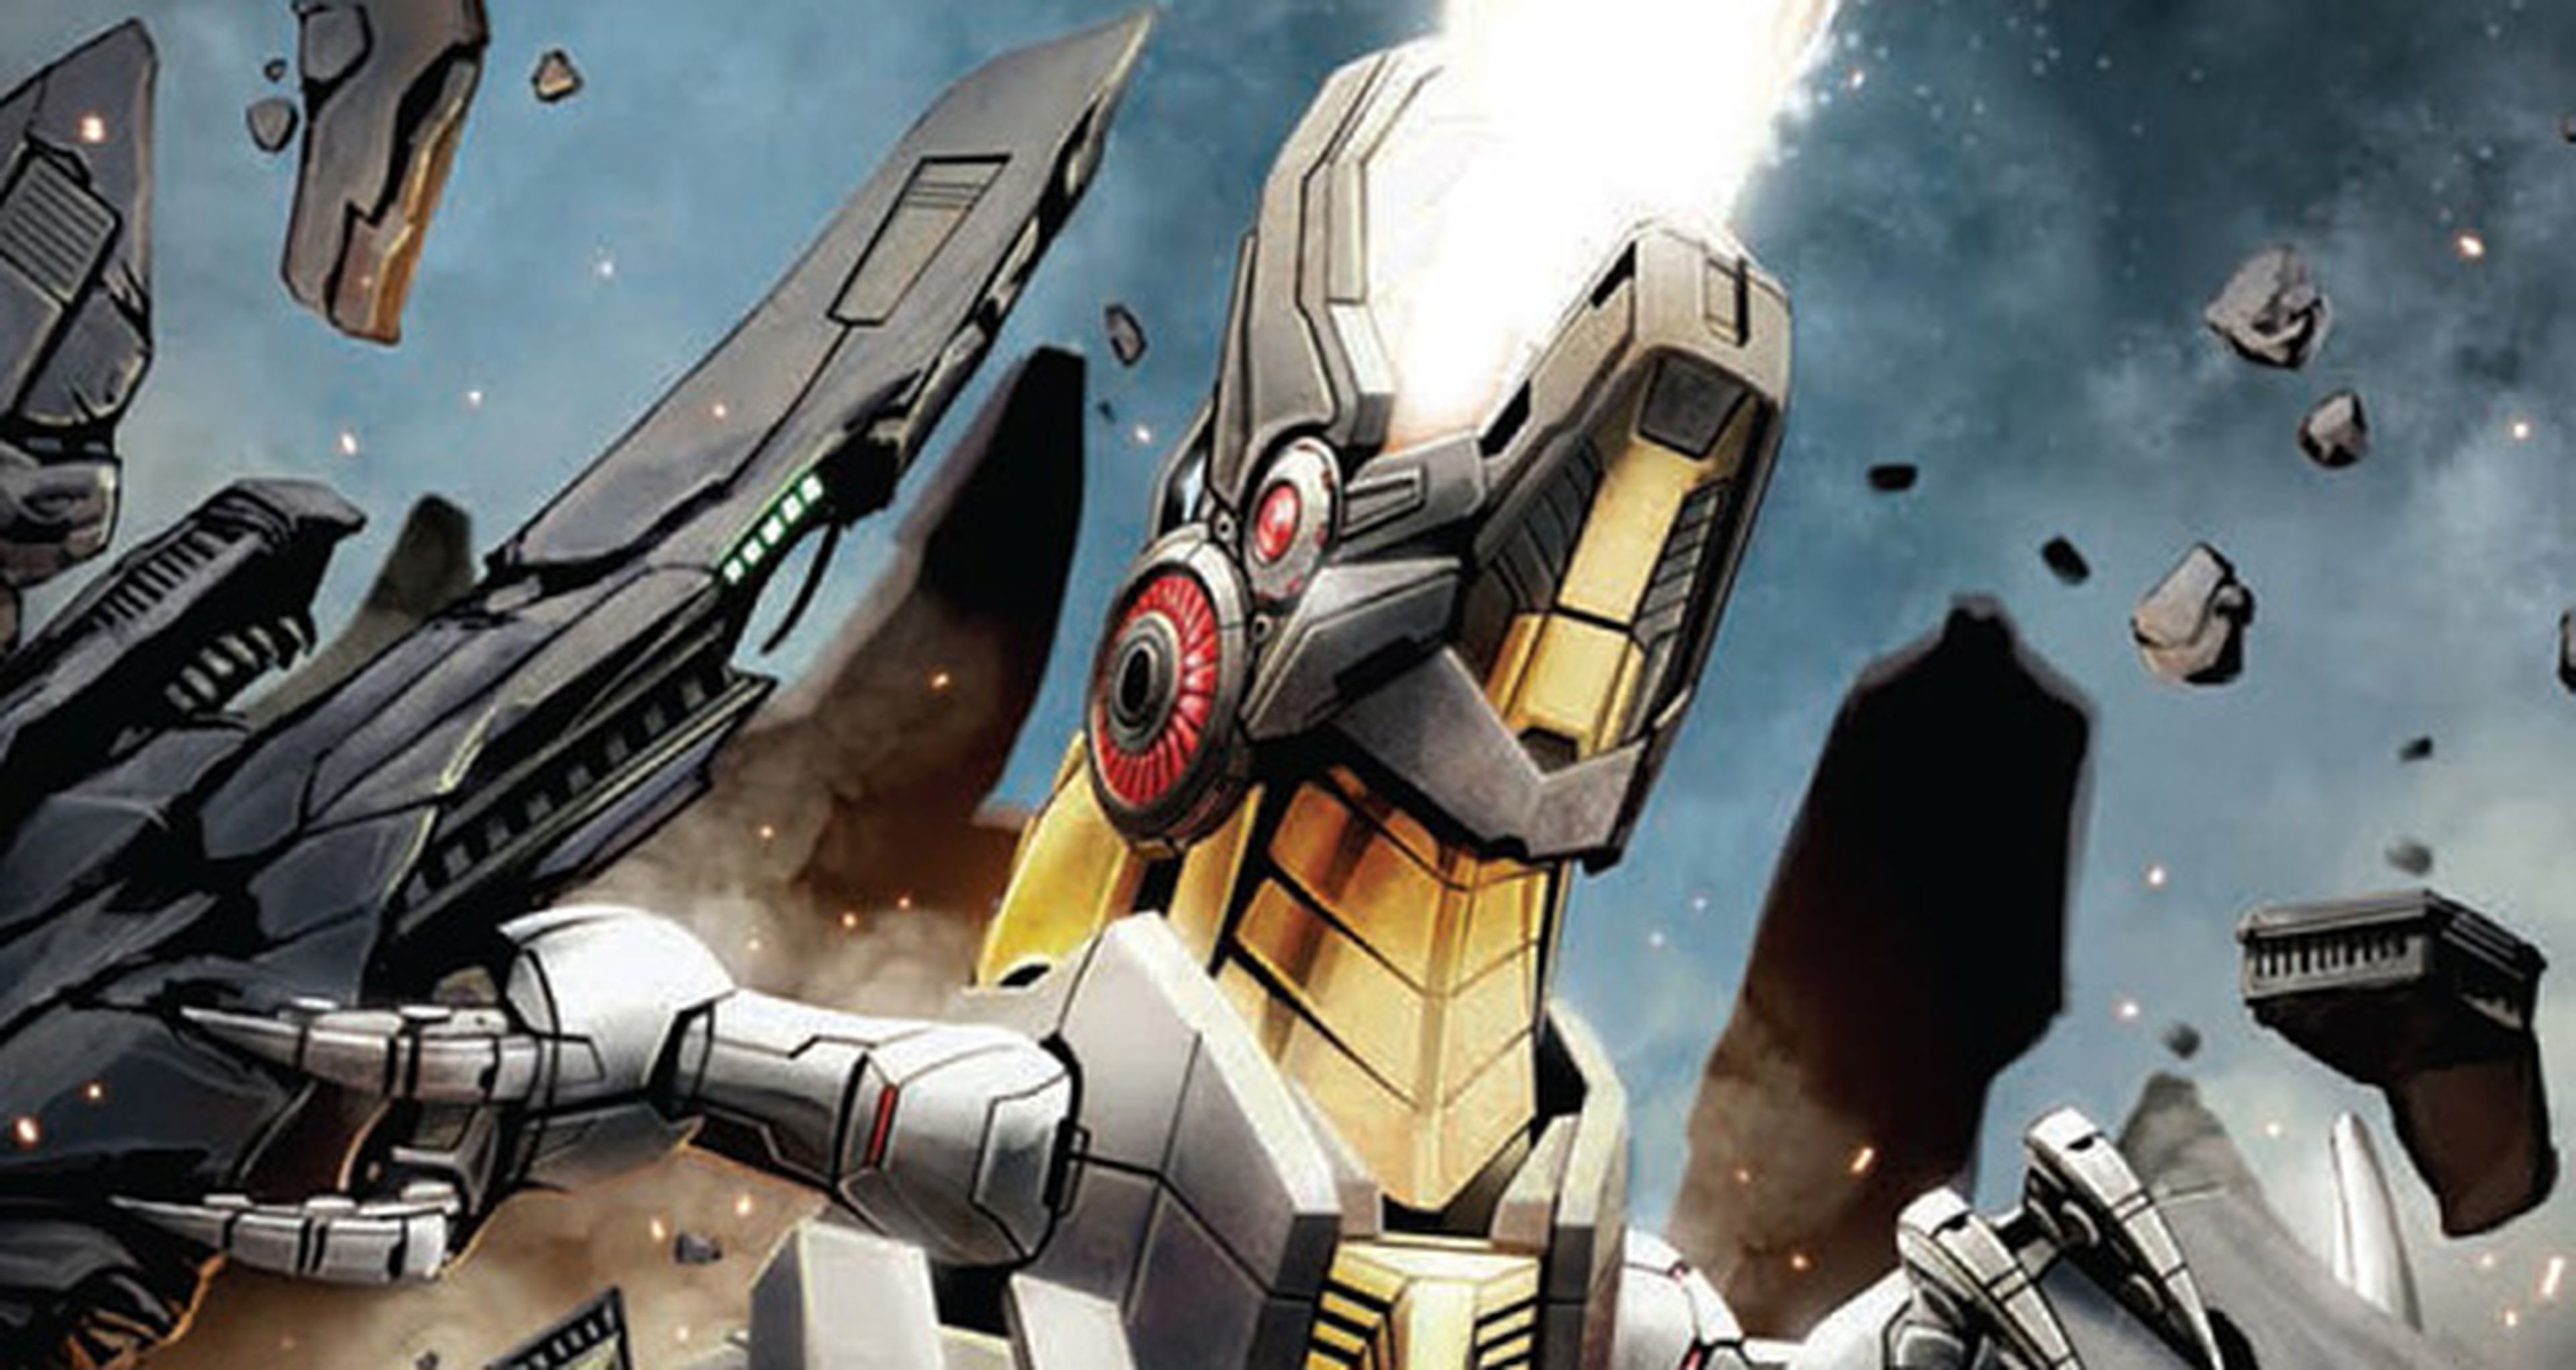 EEUU: Arranca el cómic de Transformers Prime: Beast Hunters